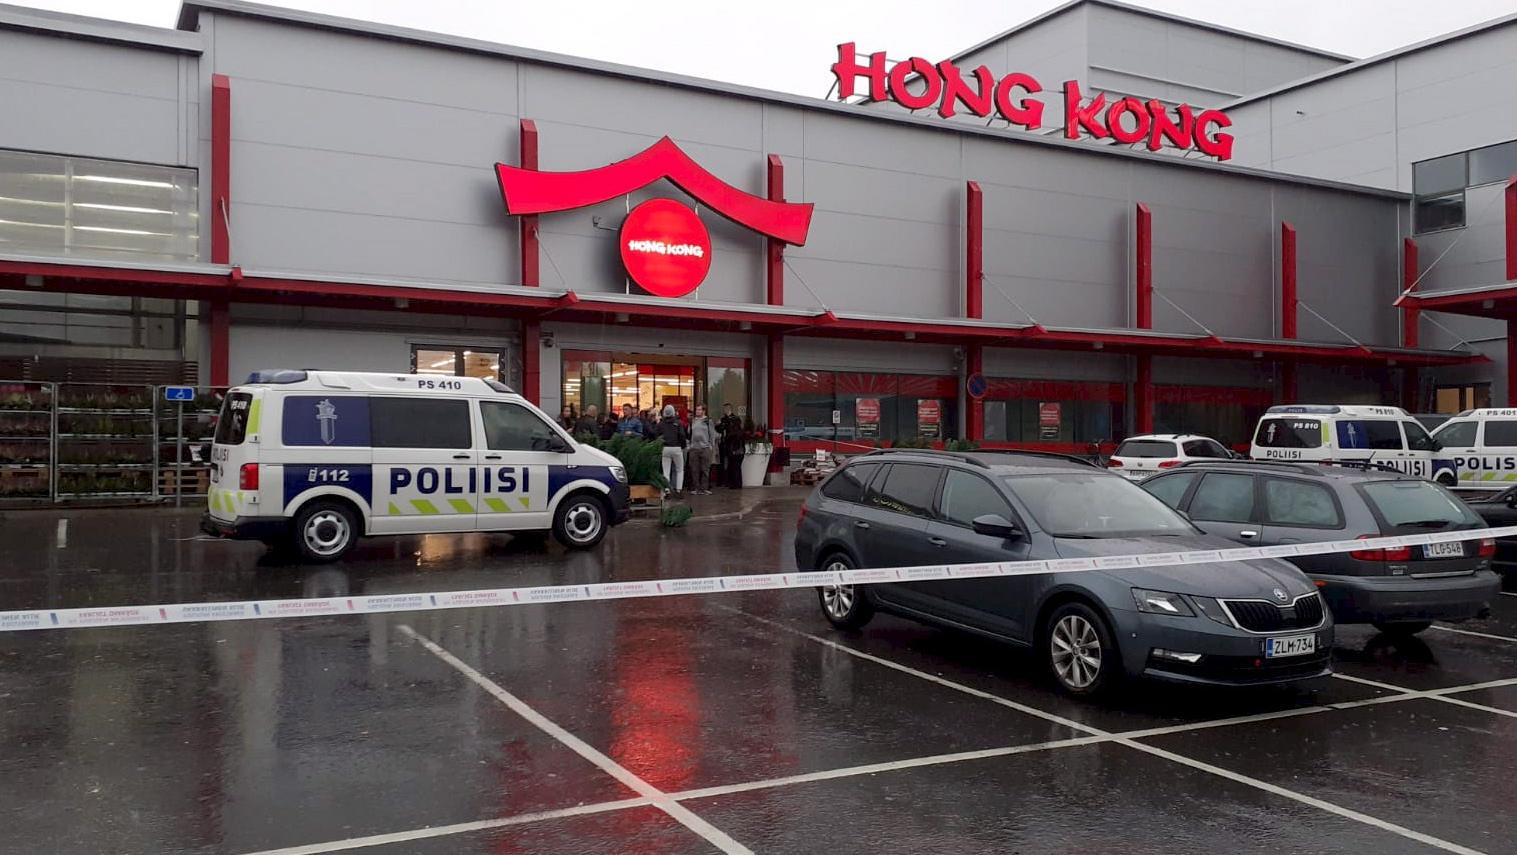 01.10.2019, Finnland, Kuopio: Ein Polizeifahrzeug steht vor einem Einkaufzentrum. Bei einem gewalttätigen Vorfall in einer in einem Einkaufszentrum liegenden Berufsschule hat es einen Toten gegeben. Foto: Jaakko Vesterinen/Lehtikuva/dpa +++ dpa-Bildf